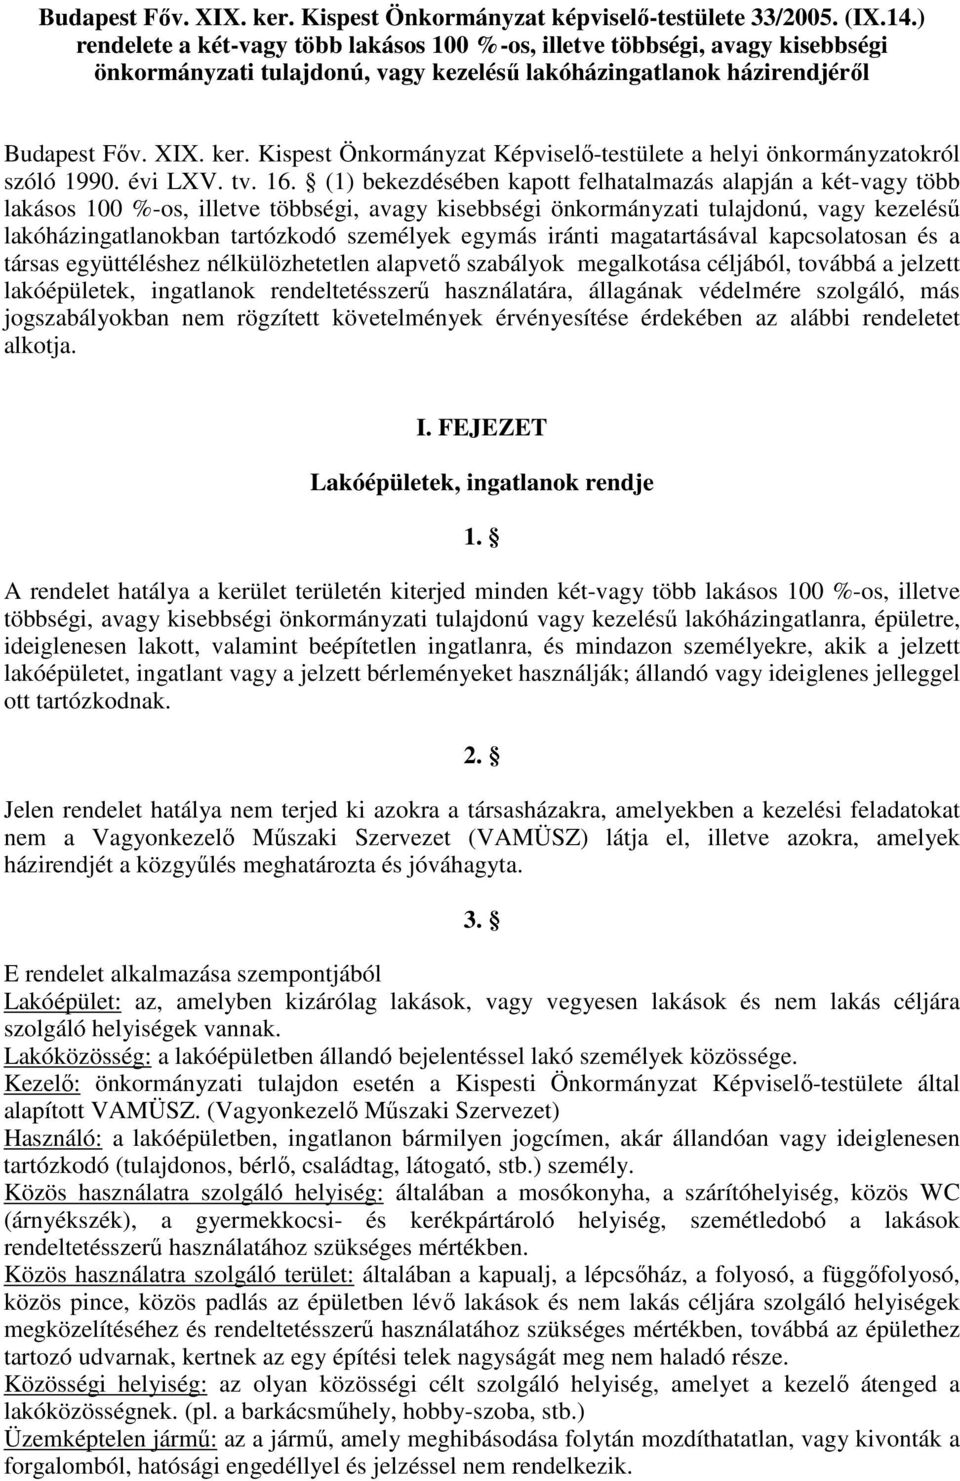 Kispest Önkormányzat Képviselı-testülete a helyi önkormányzatokról szóló 1990. évi LXV. tv. 16.